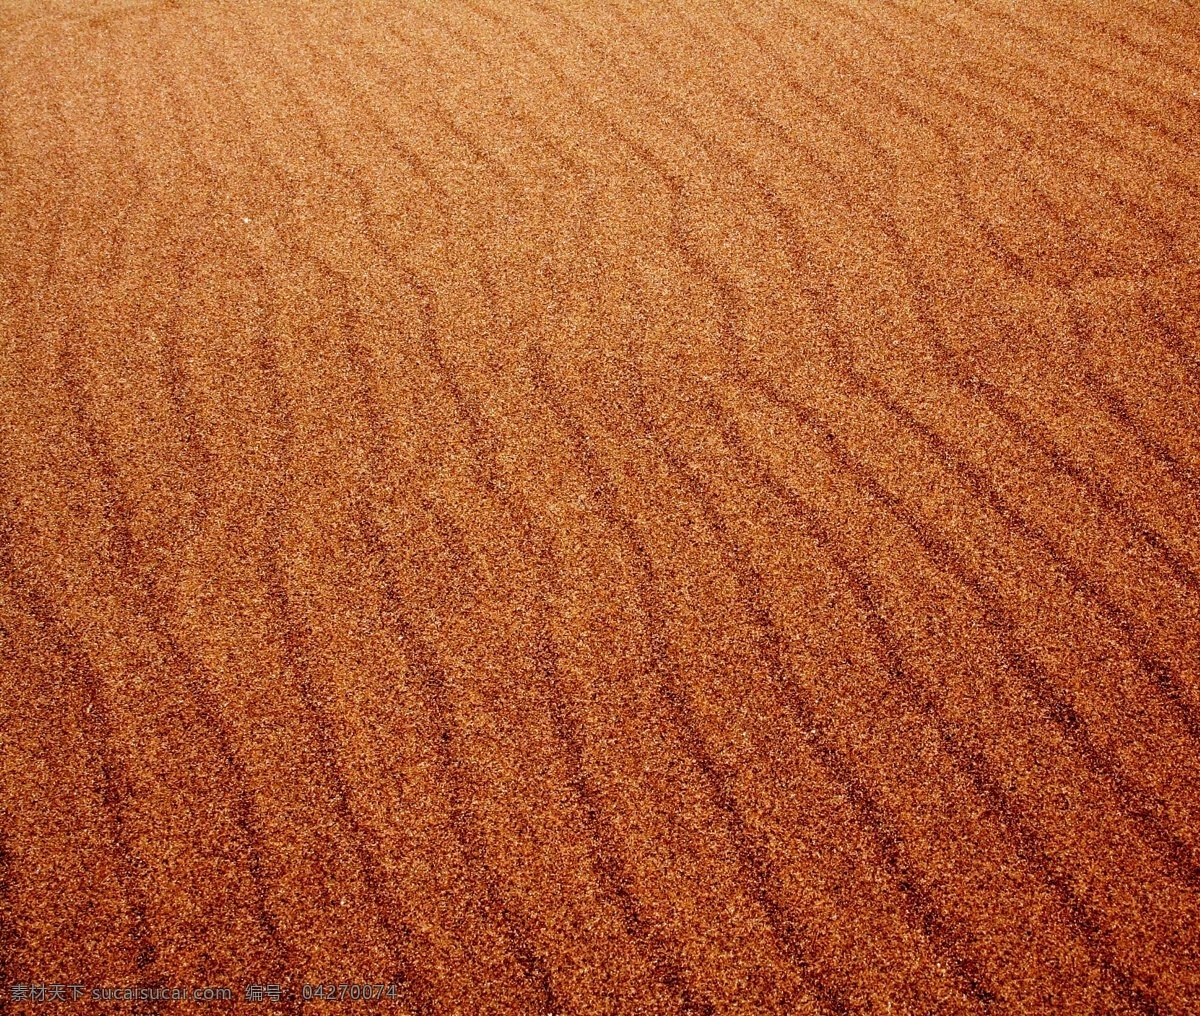 沙子 背景 沙滩 海滩 沙漠 细砂 底纹背景 背景图片 山水风景 风景图片